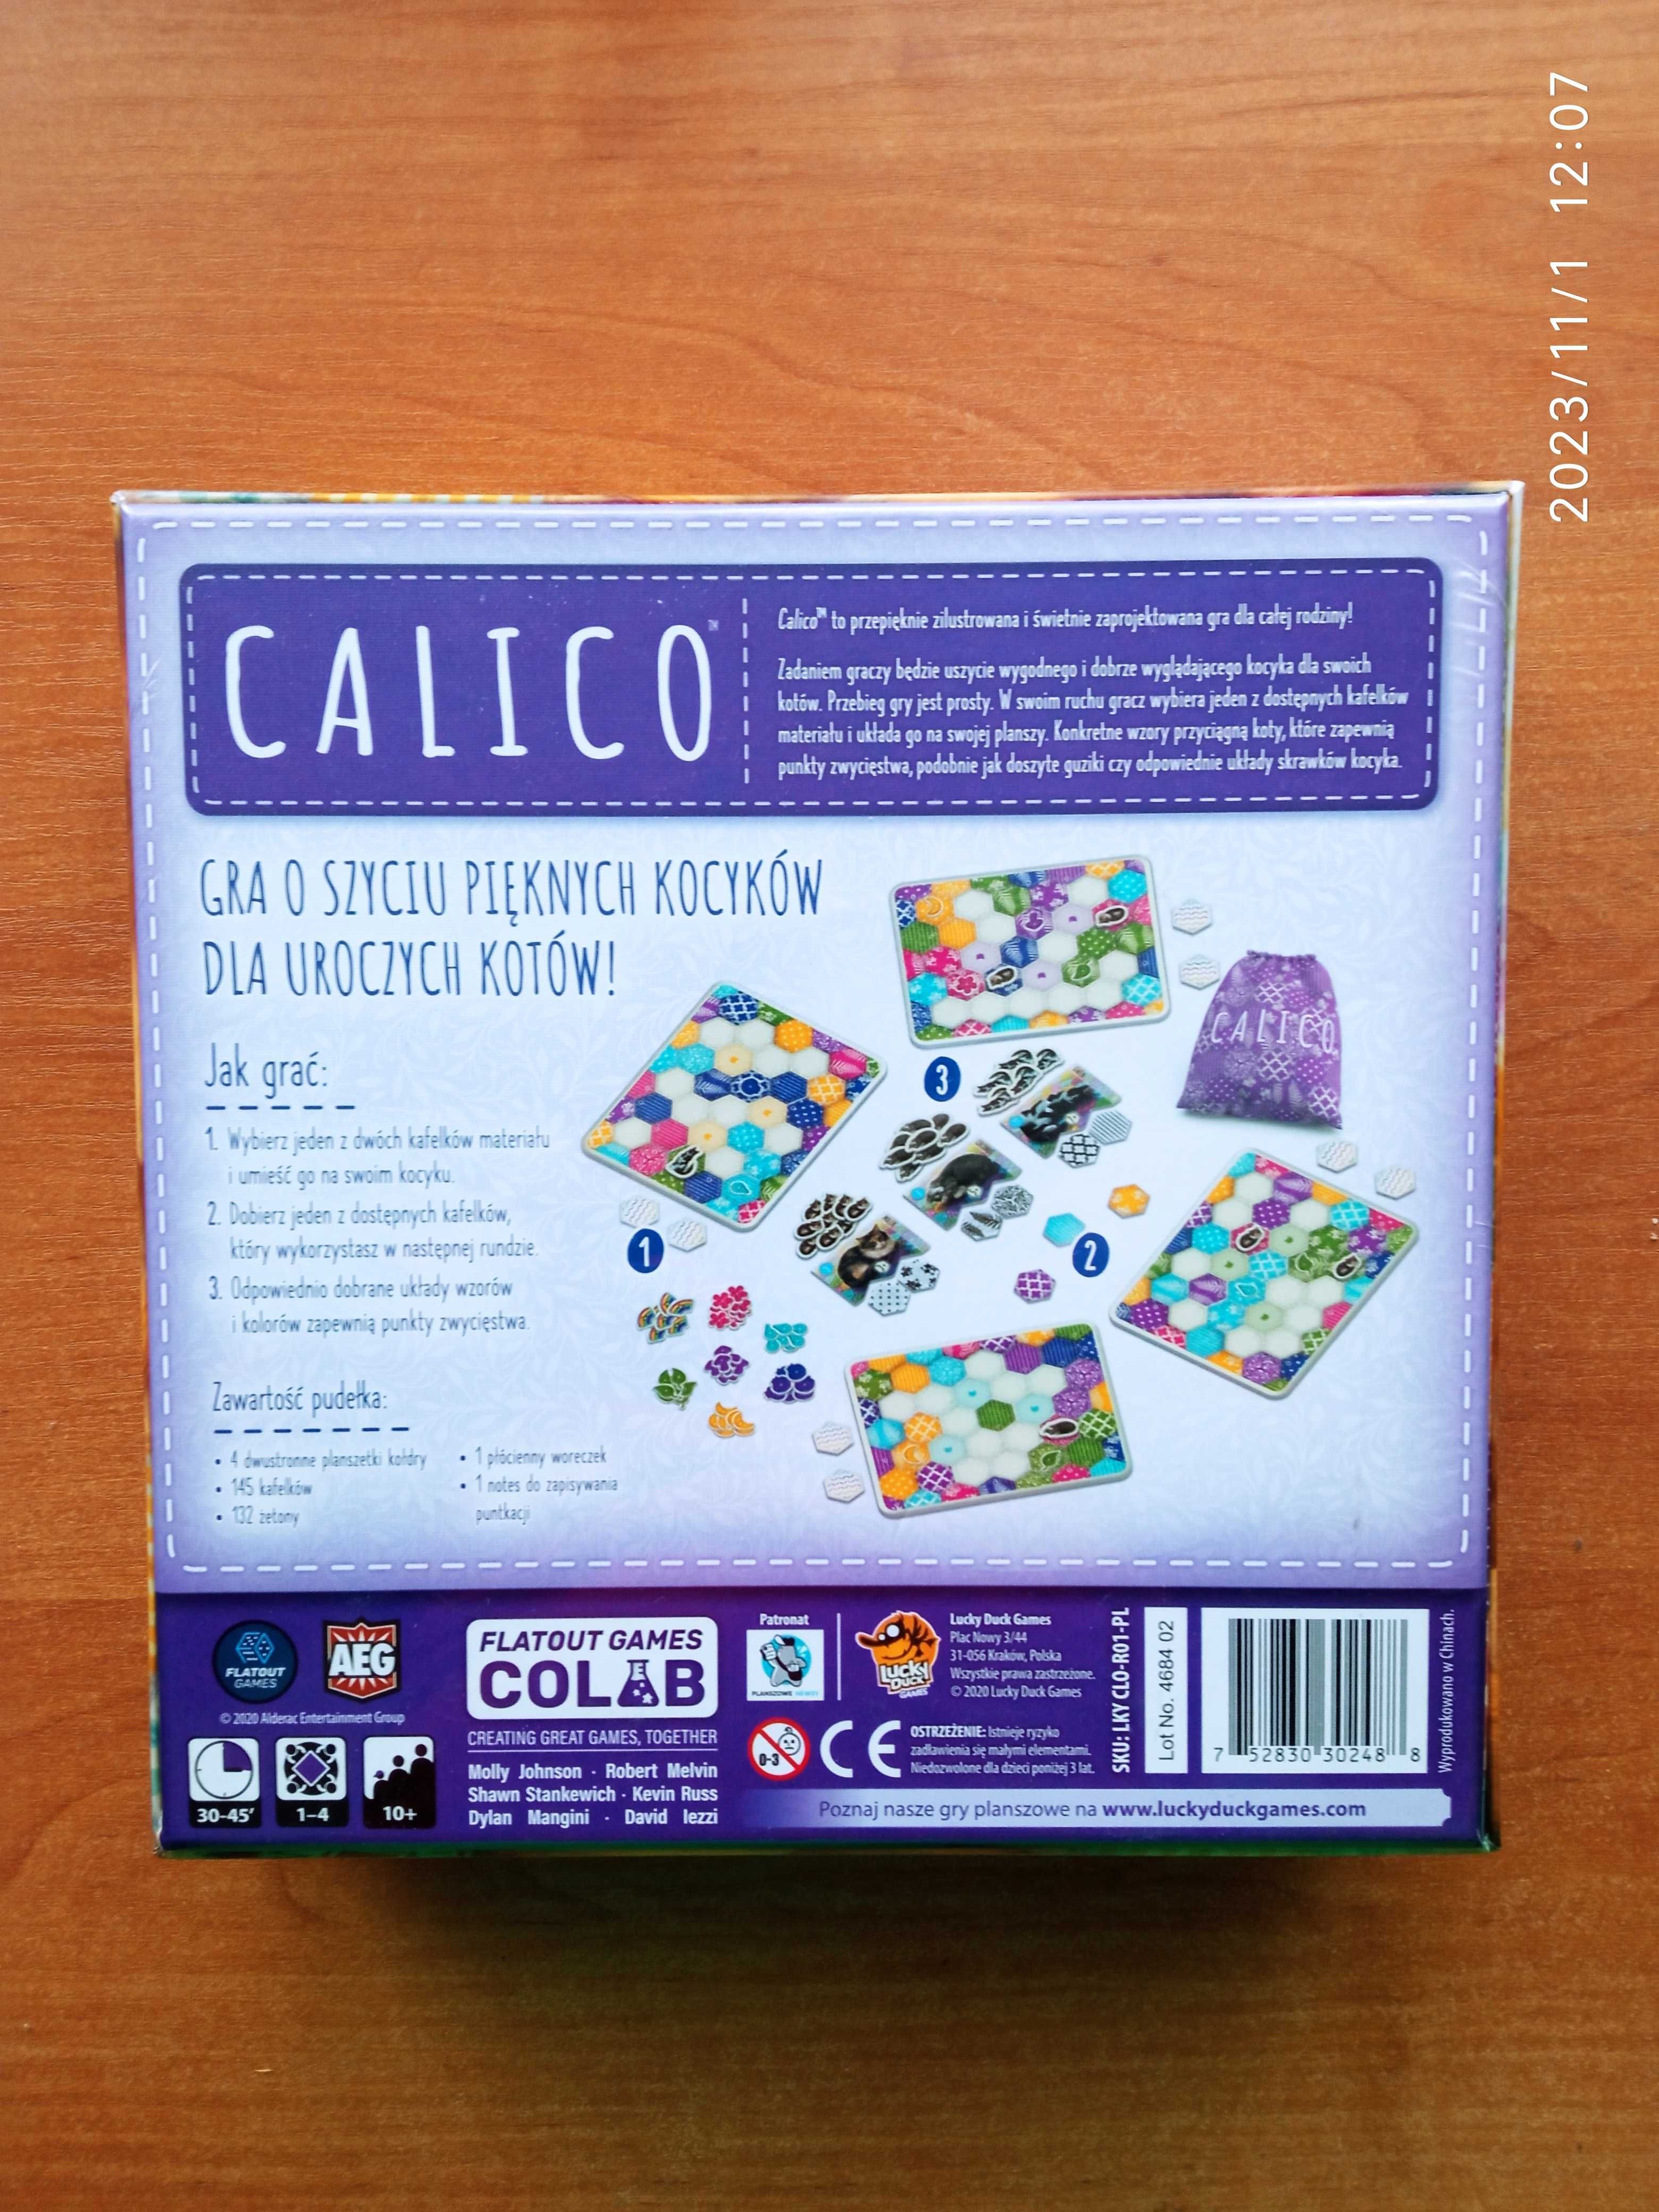 Calico + promo koty gra planszowa